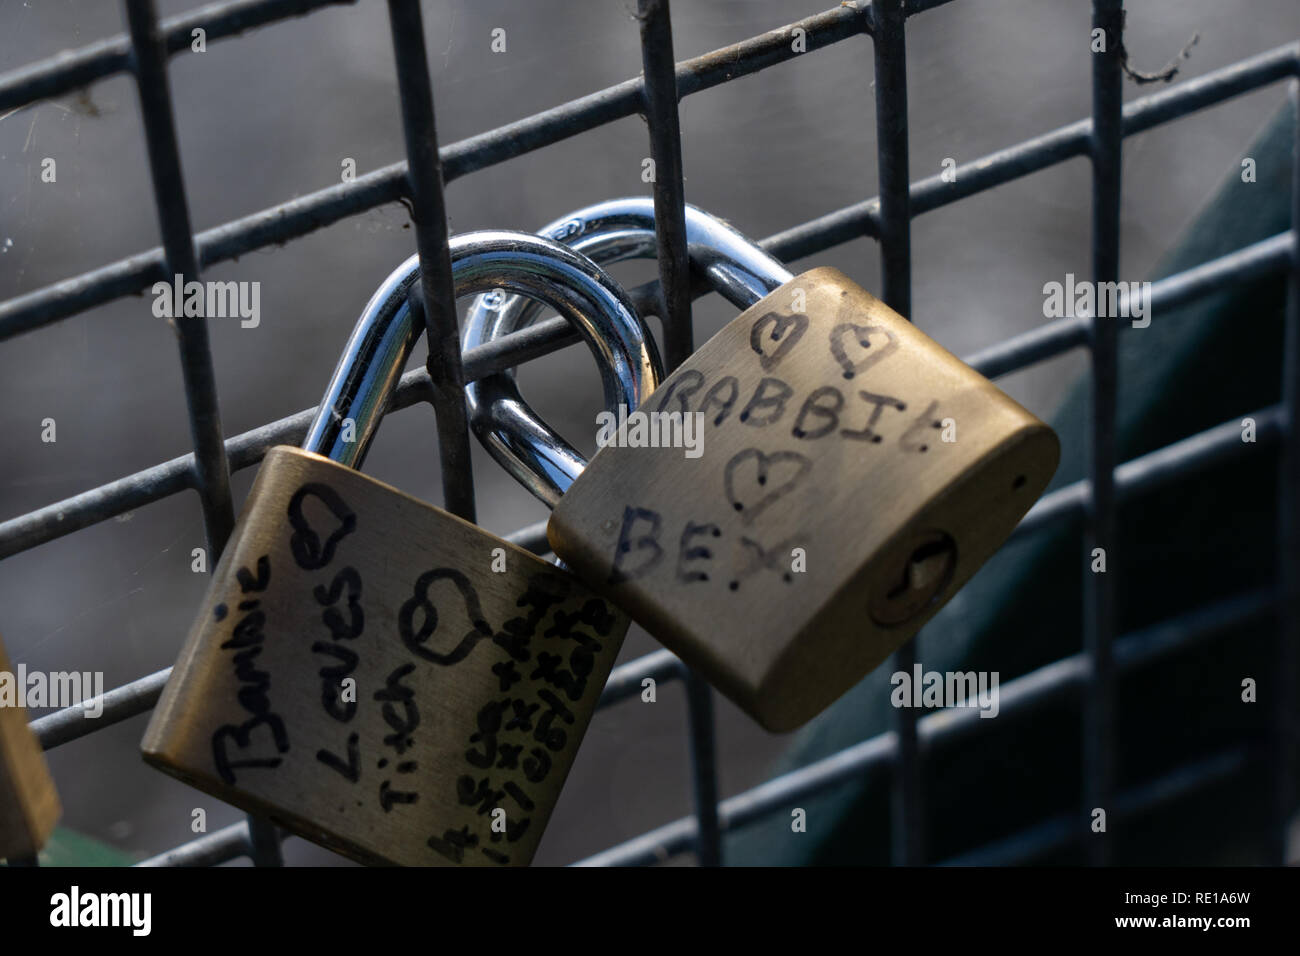 Deux cadenas verrouillés ensemble sur une clôture en métal avec des noms inscrits sur ces cadenas. Banque D'Images